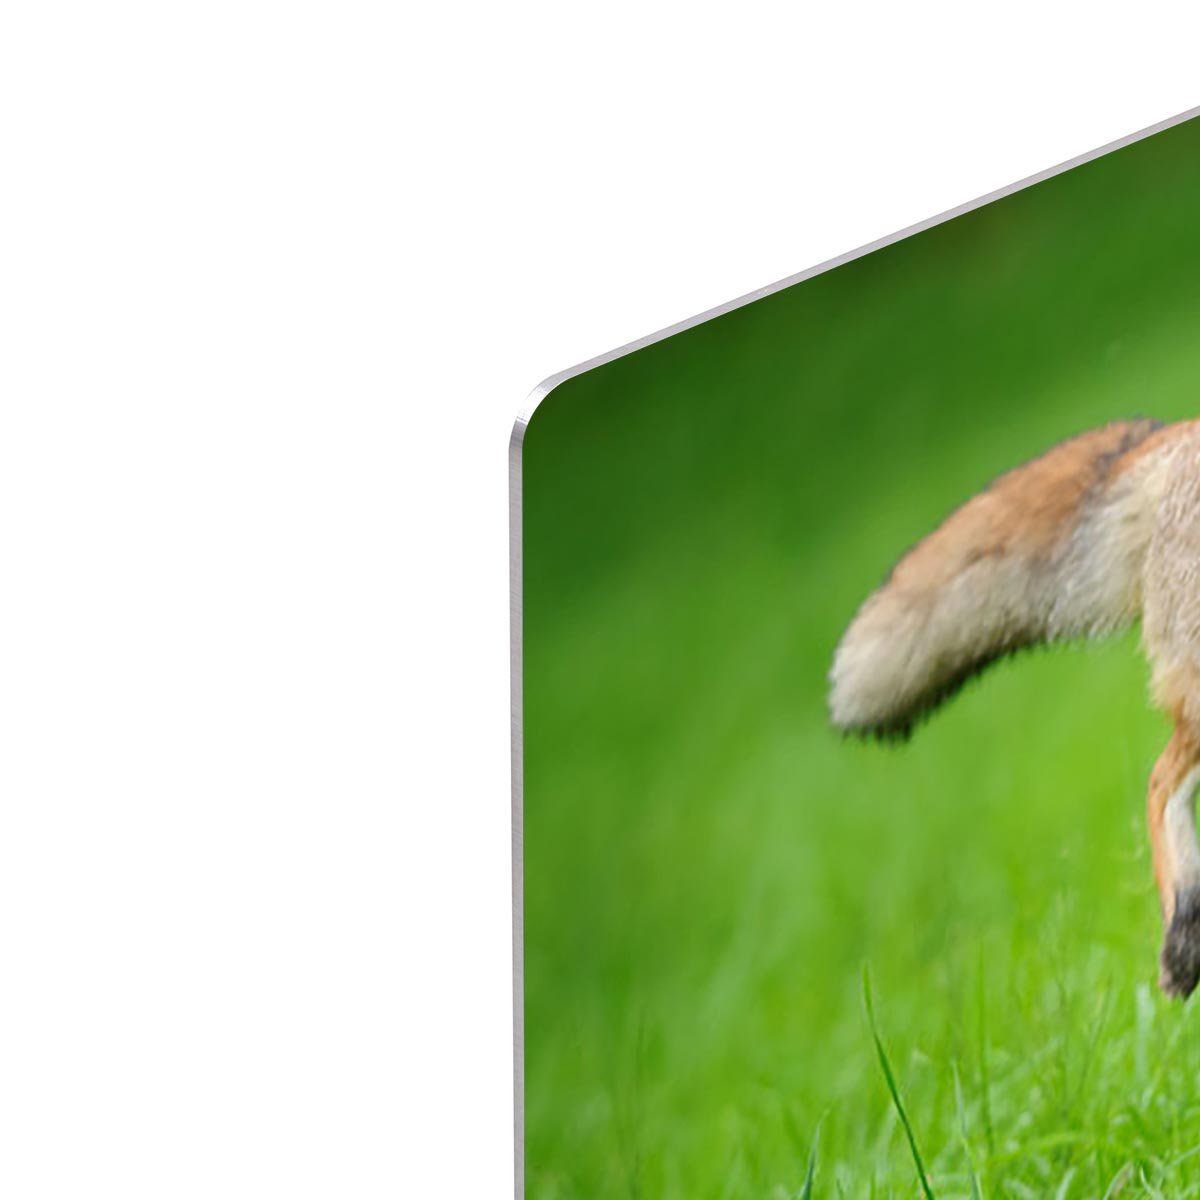 Red fox on hunt HD Metal Print - Canvas Art Rocks - 4